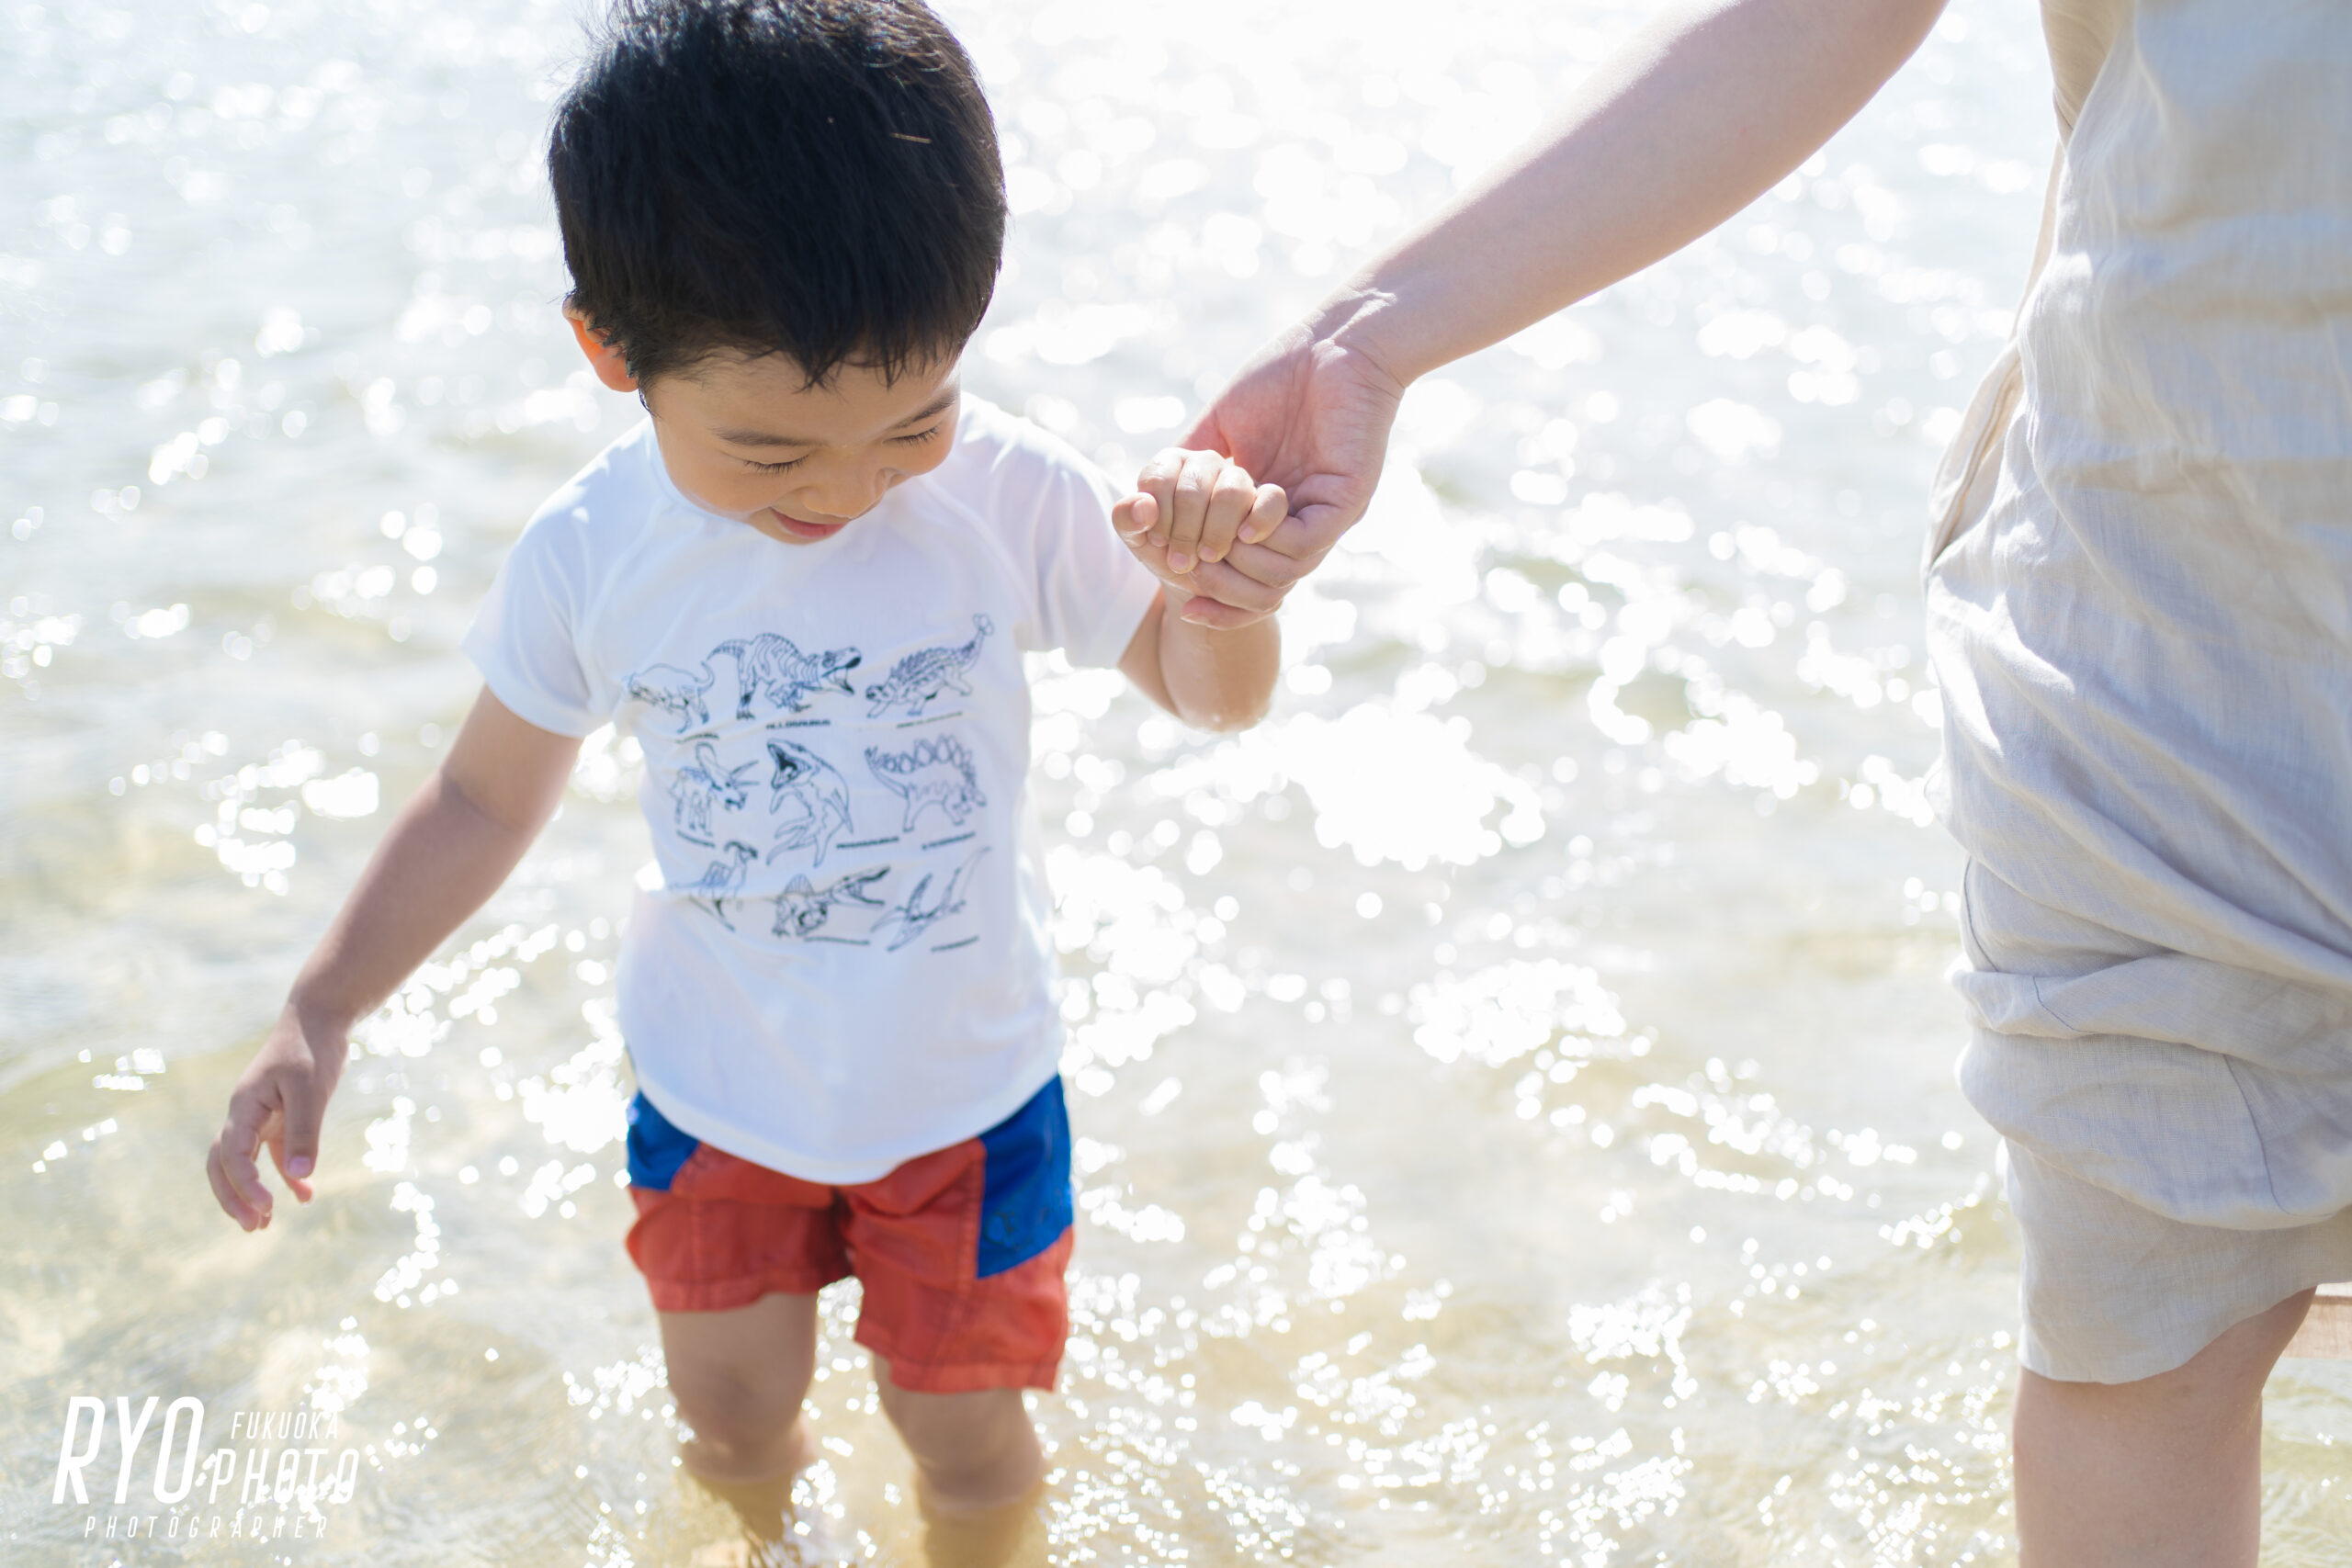 松浦市の大崎海水浴場で撮影した子供の写真